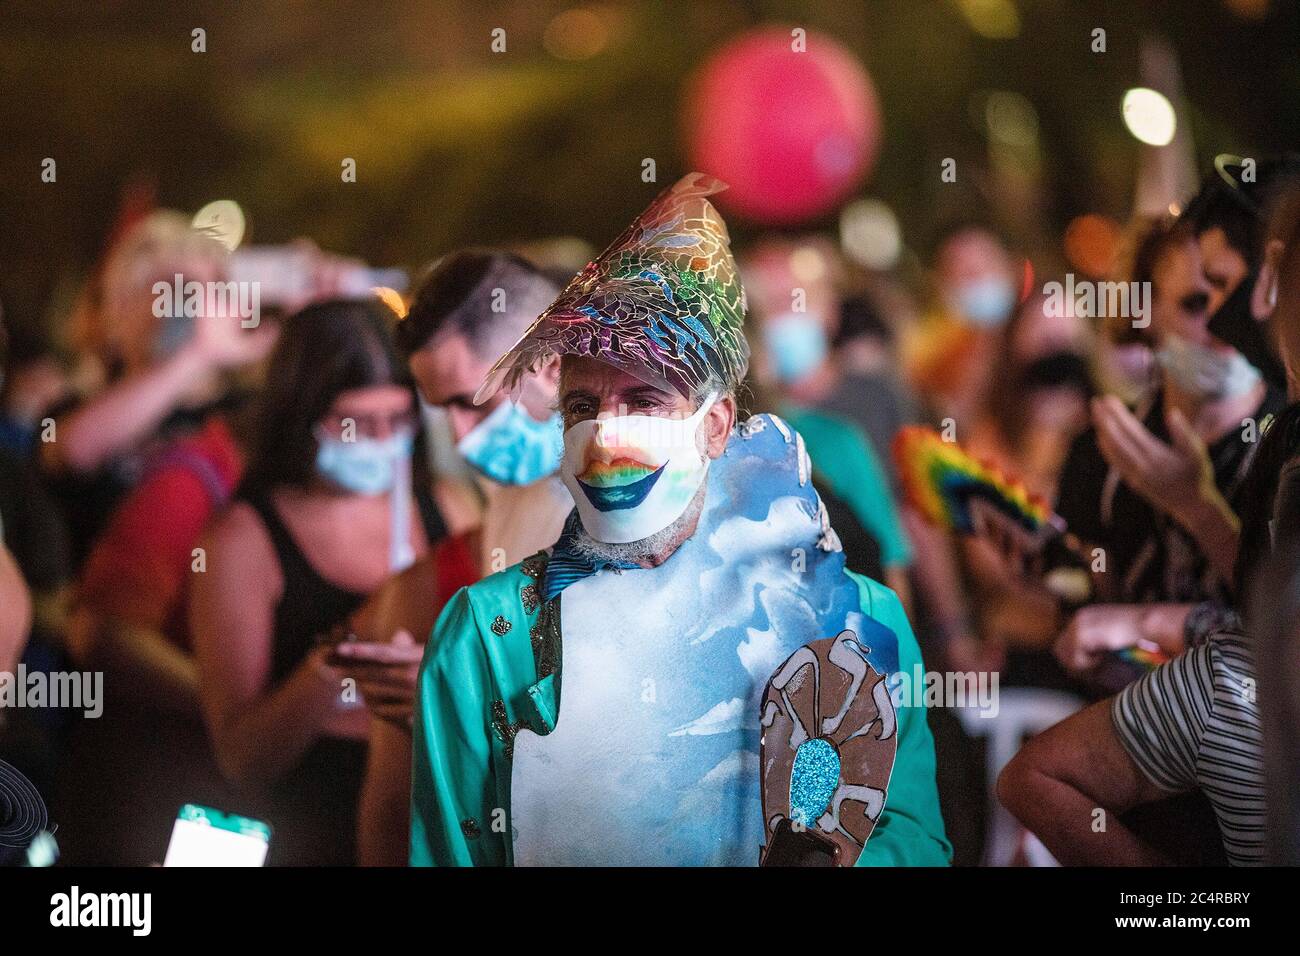 Tel Aviv, Israël. 28 juin 2020. Une personne en costume participe à un événement marquant le défilé annuel des homosexuels qui a été annulé cette année dans le contexte de la propagation de la pandémie du coronavirus. Crédit : Ilia Yefimovich/dpa/Alay Live News Banque D'Images